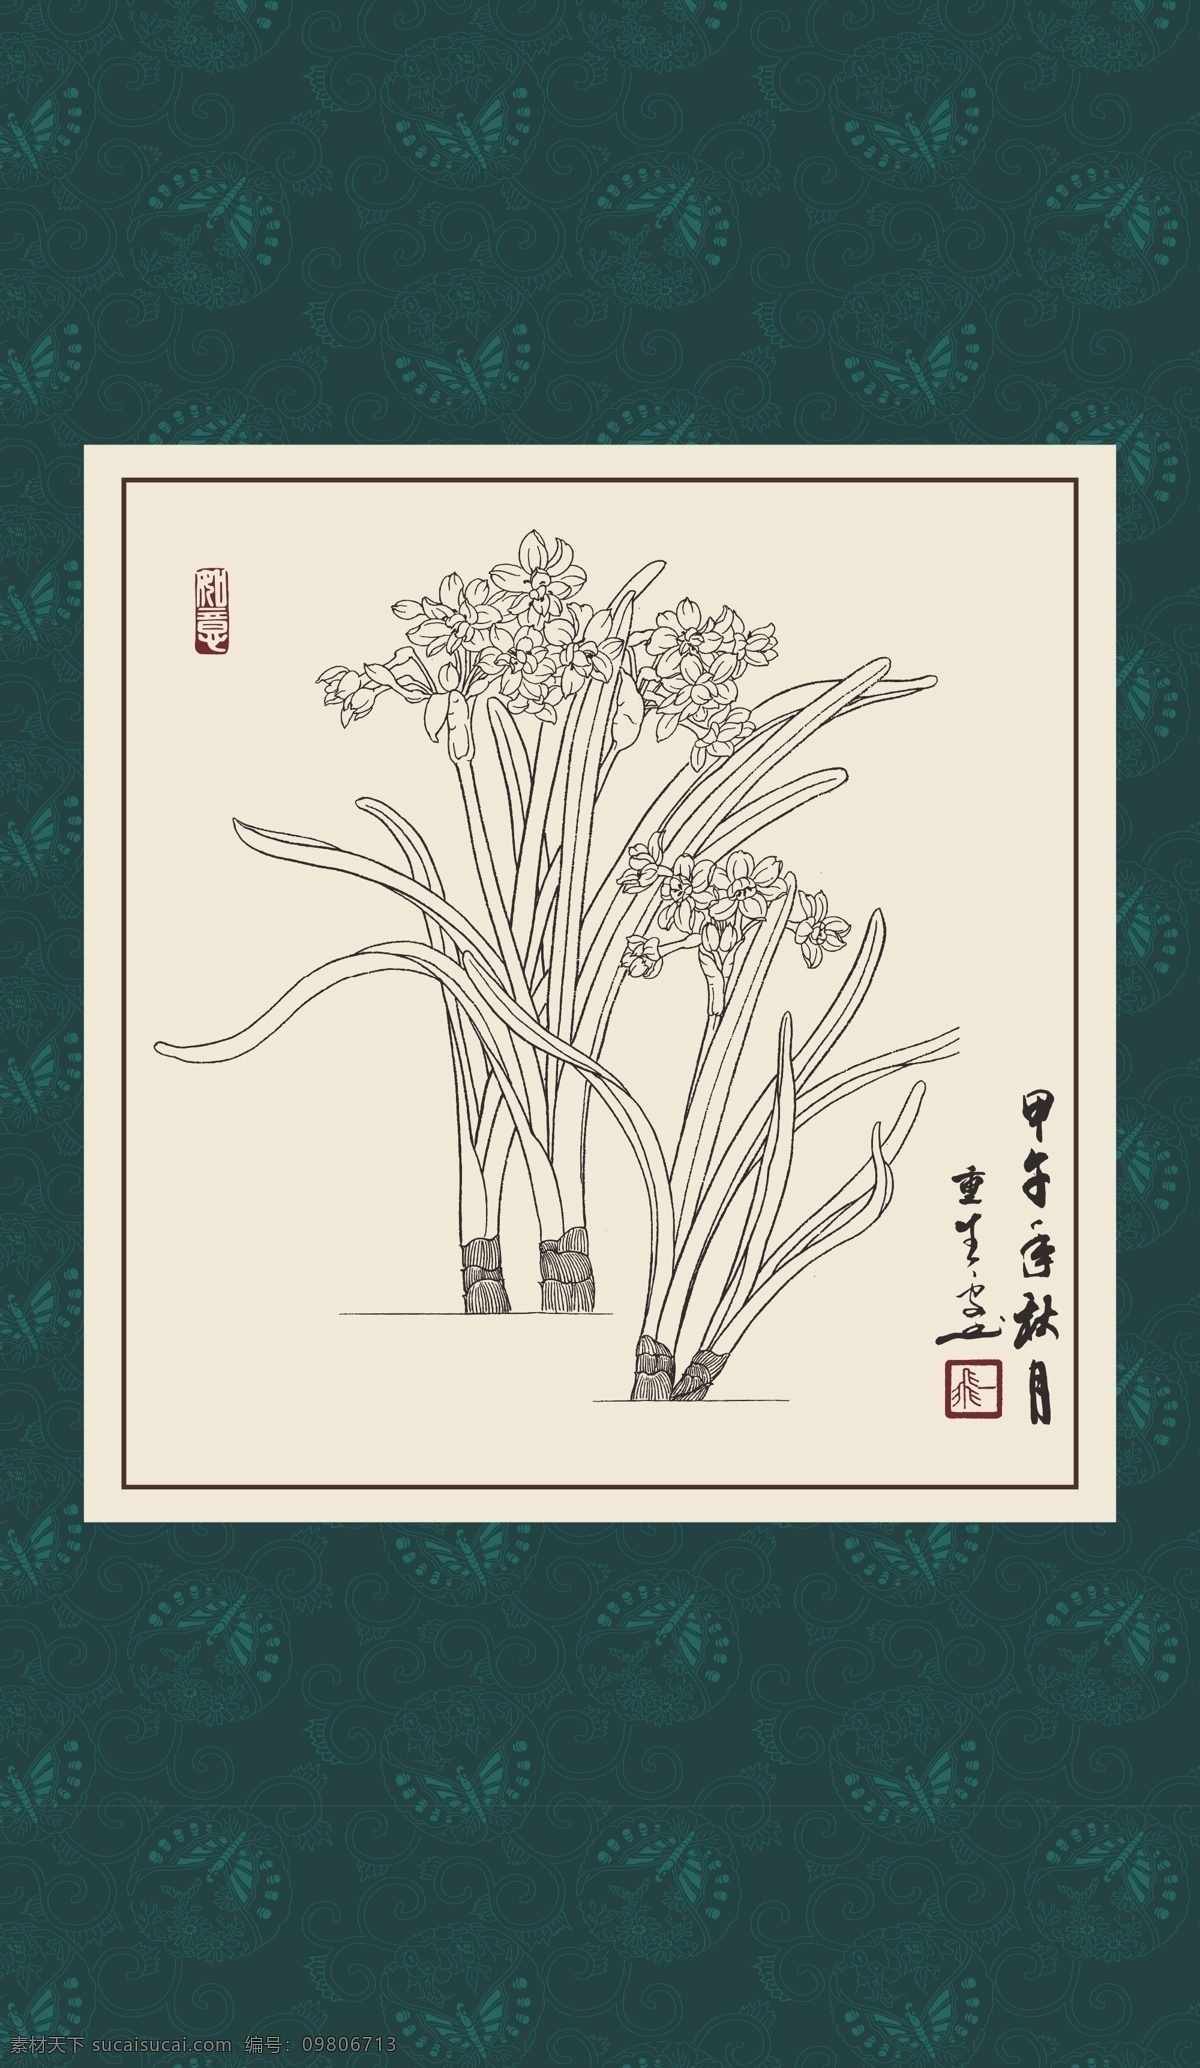 白描 线描 绘画 手绘 国画 印章 植物 花卉 工笔 gx150075 白描水仙 文化艺术 绘画书法